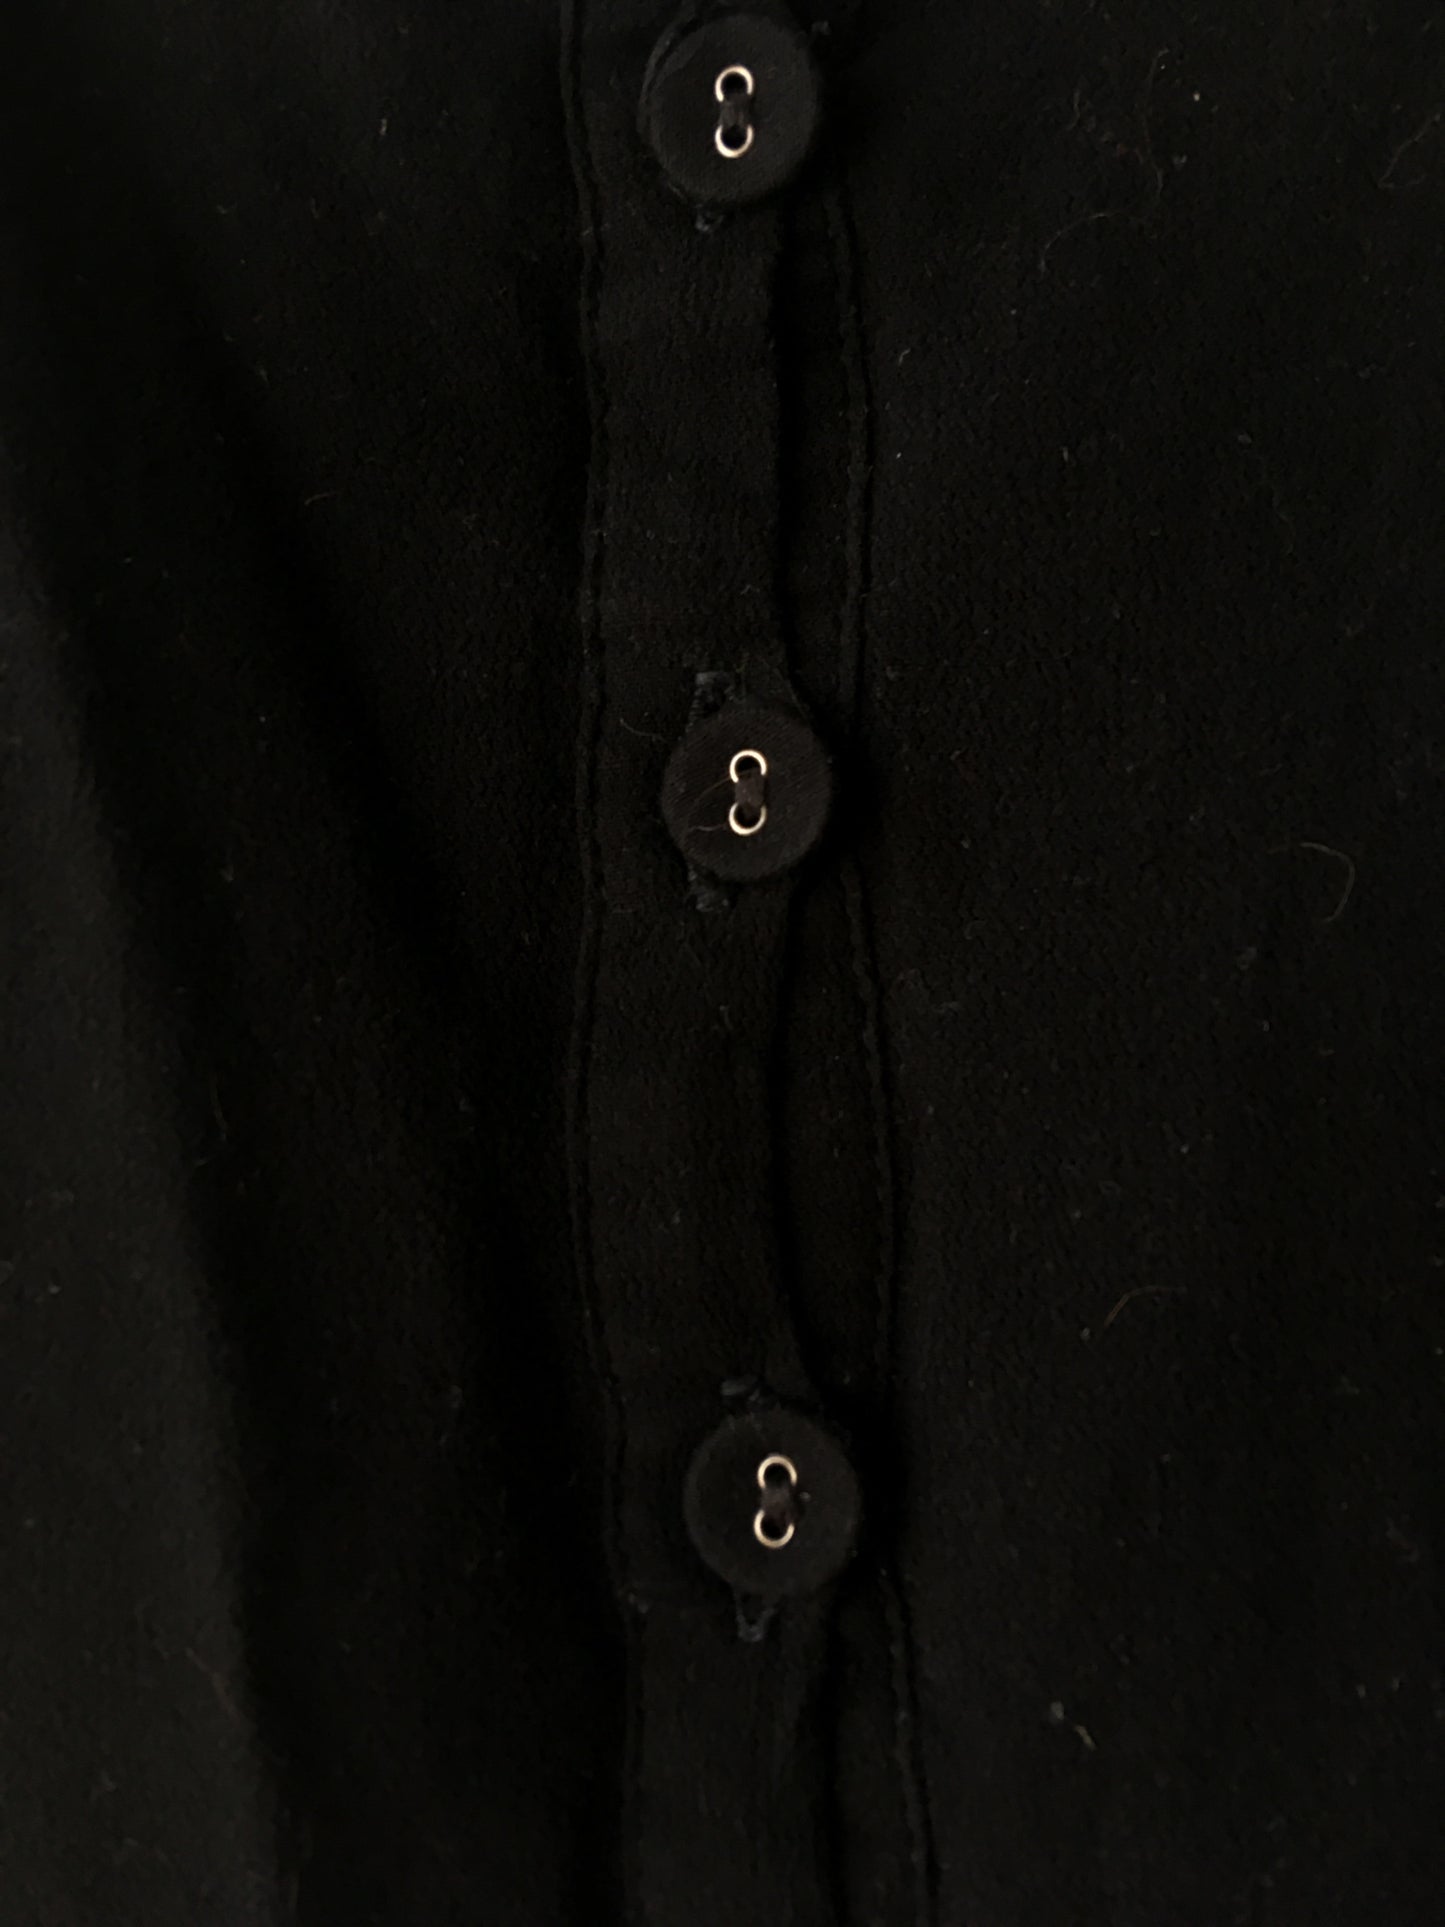 Black dress buttons